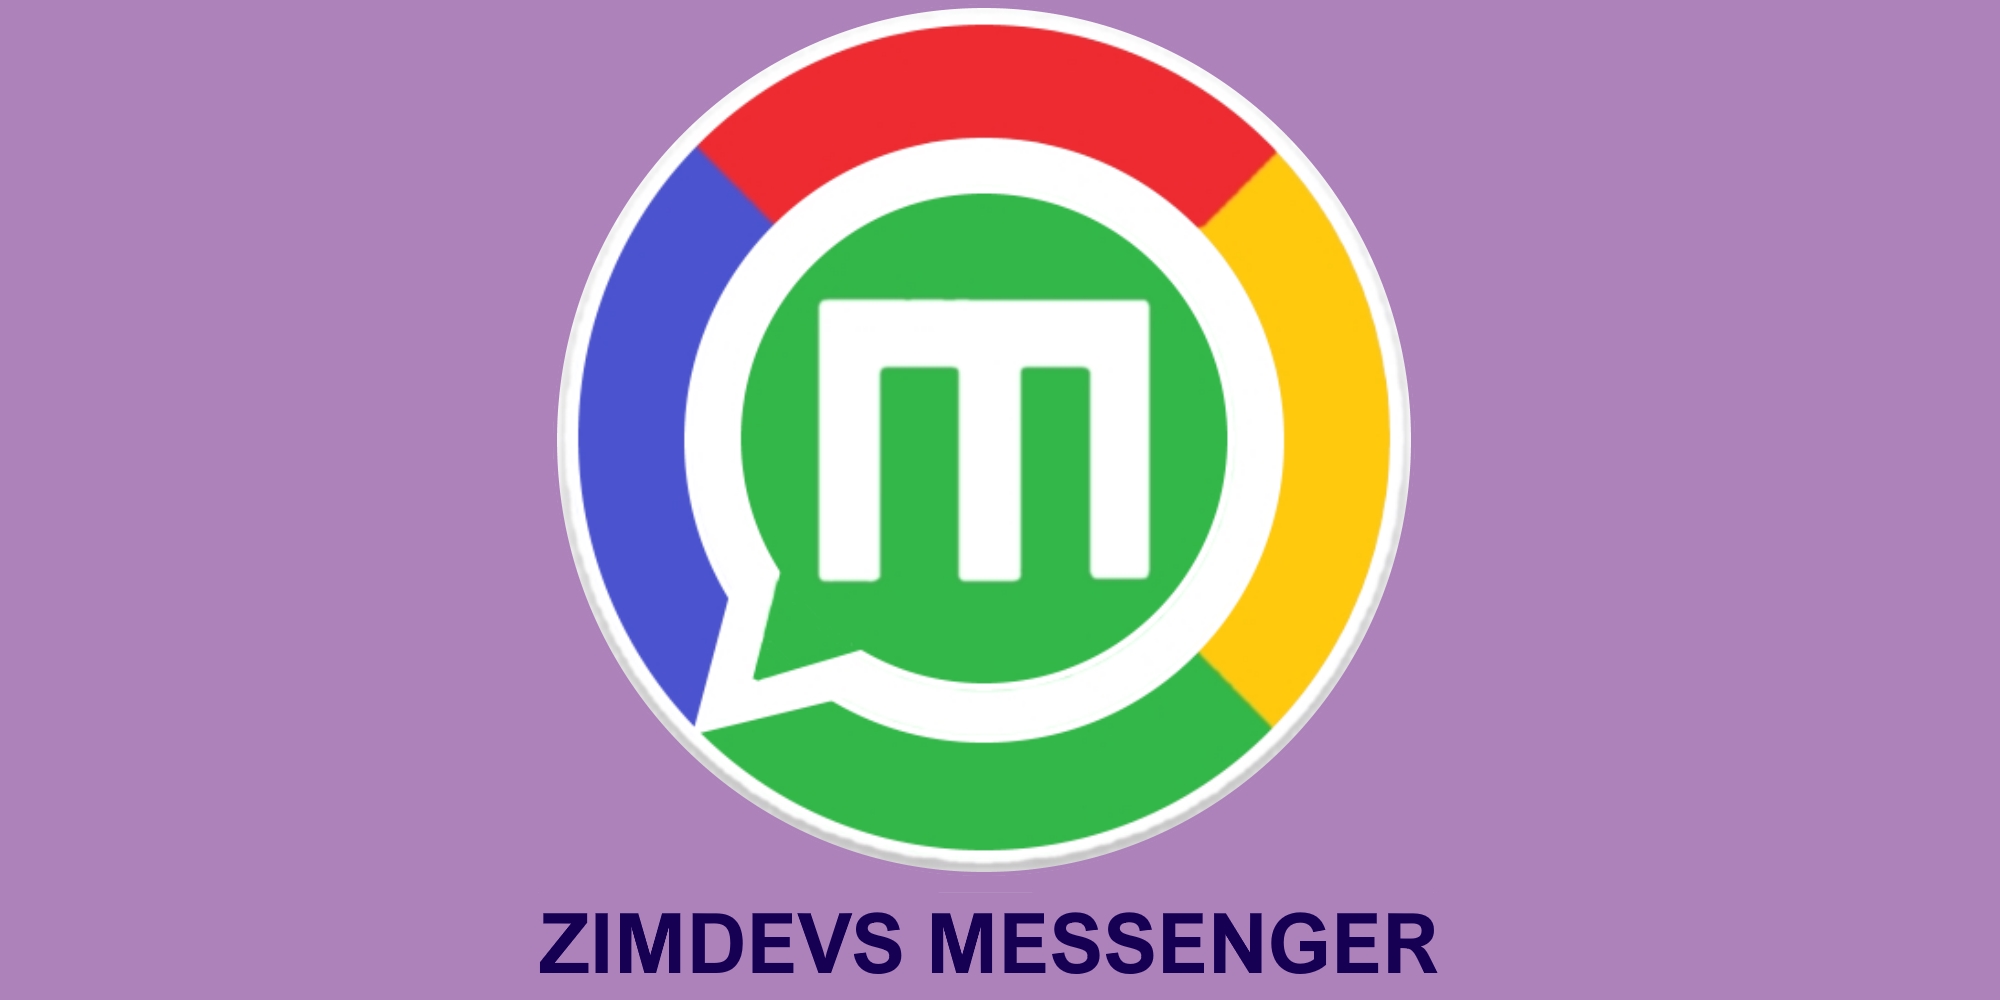 ZIMDEVS Messenger